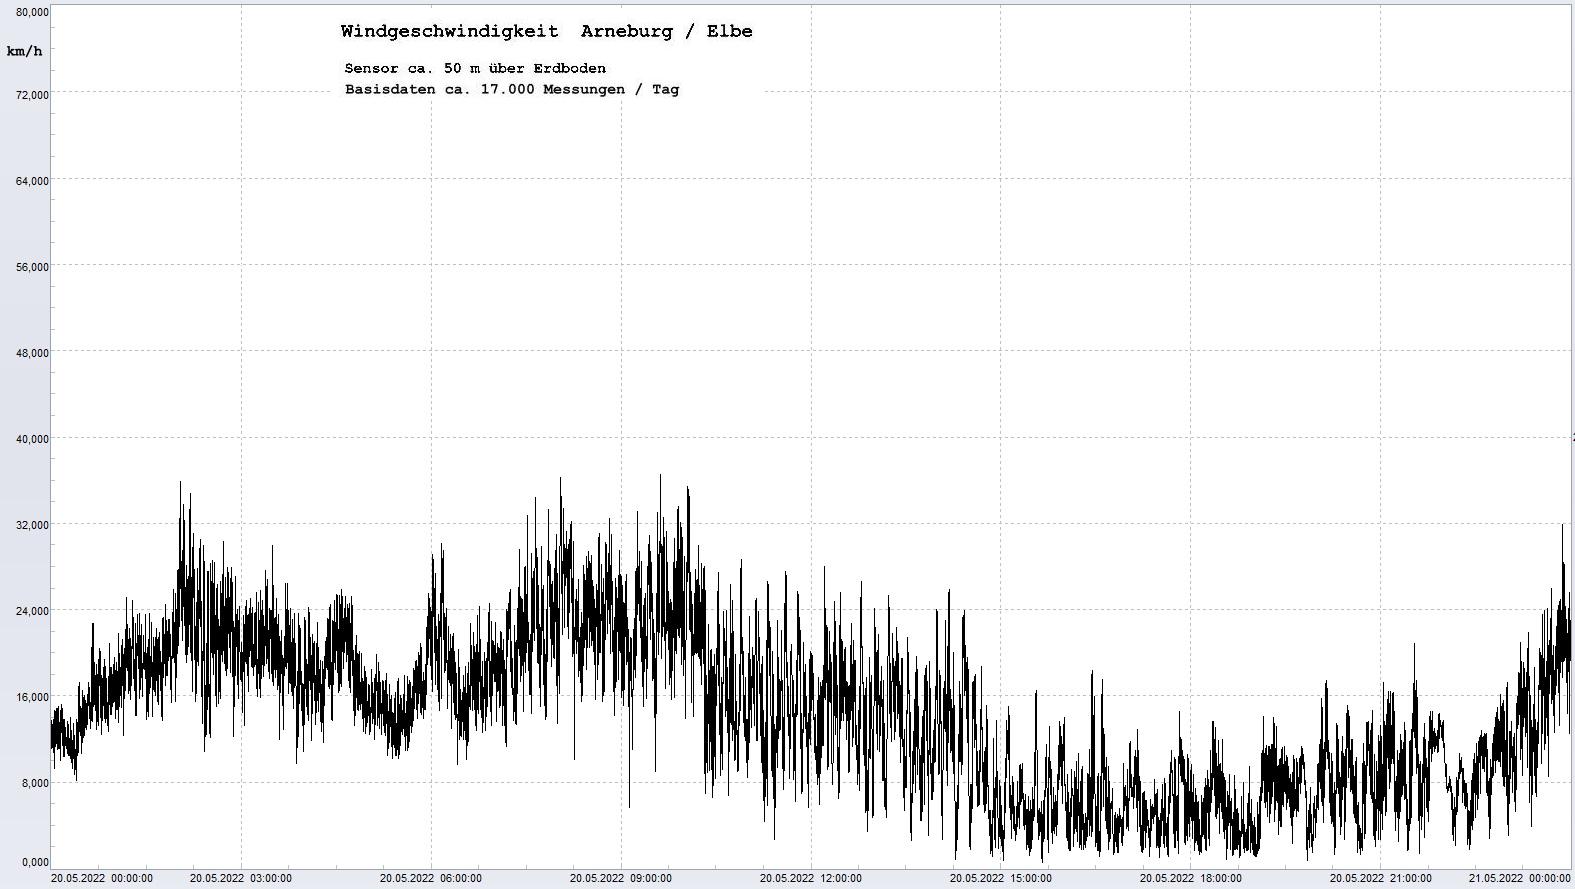 Arneburg Tages-Diagramm Winddaten, 20.05.2022
  Diagramm, Sensor auf Gebude, ca. 50 m ber Erdboden, Basis: 5s-Aufzeichnung